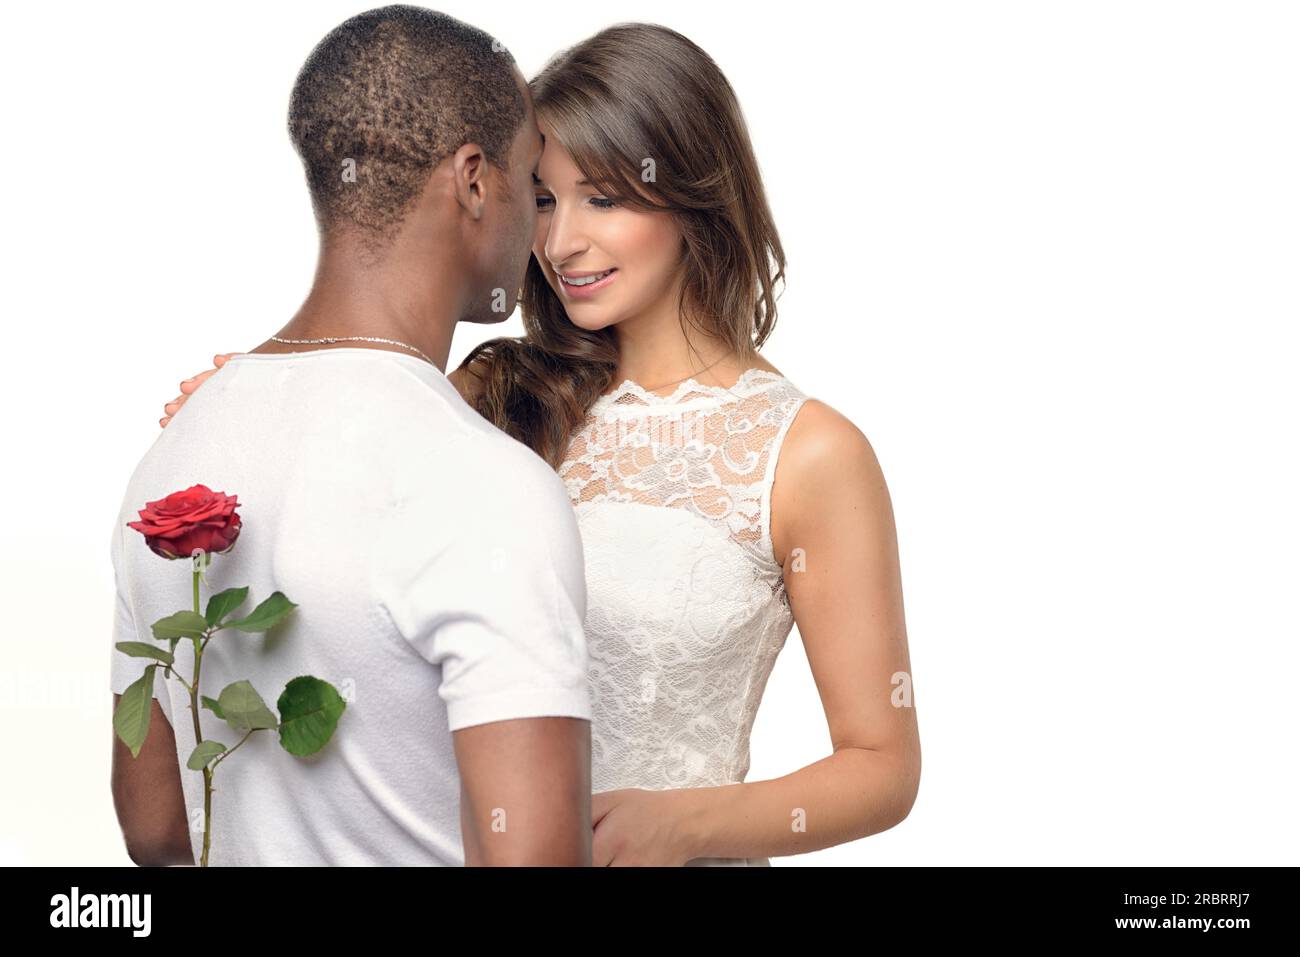 Romantischer junger Mann mit einer hübschen Frau, die hinter seinem Rücken eine rote Rose versteckt, während er sich darauf vorbereitet, sie am Valentinstag oder mit einem Heiratsantrag zu überraschen Stockfoto